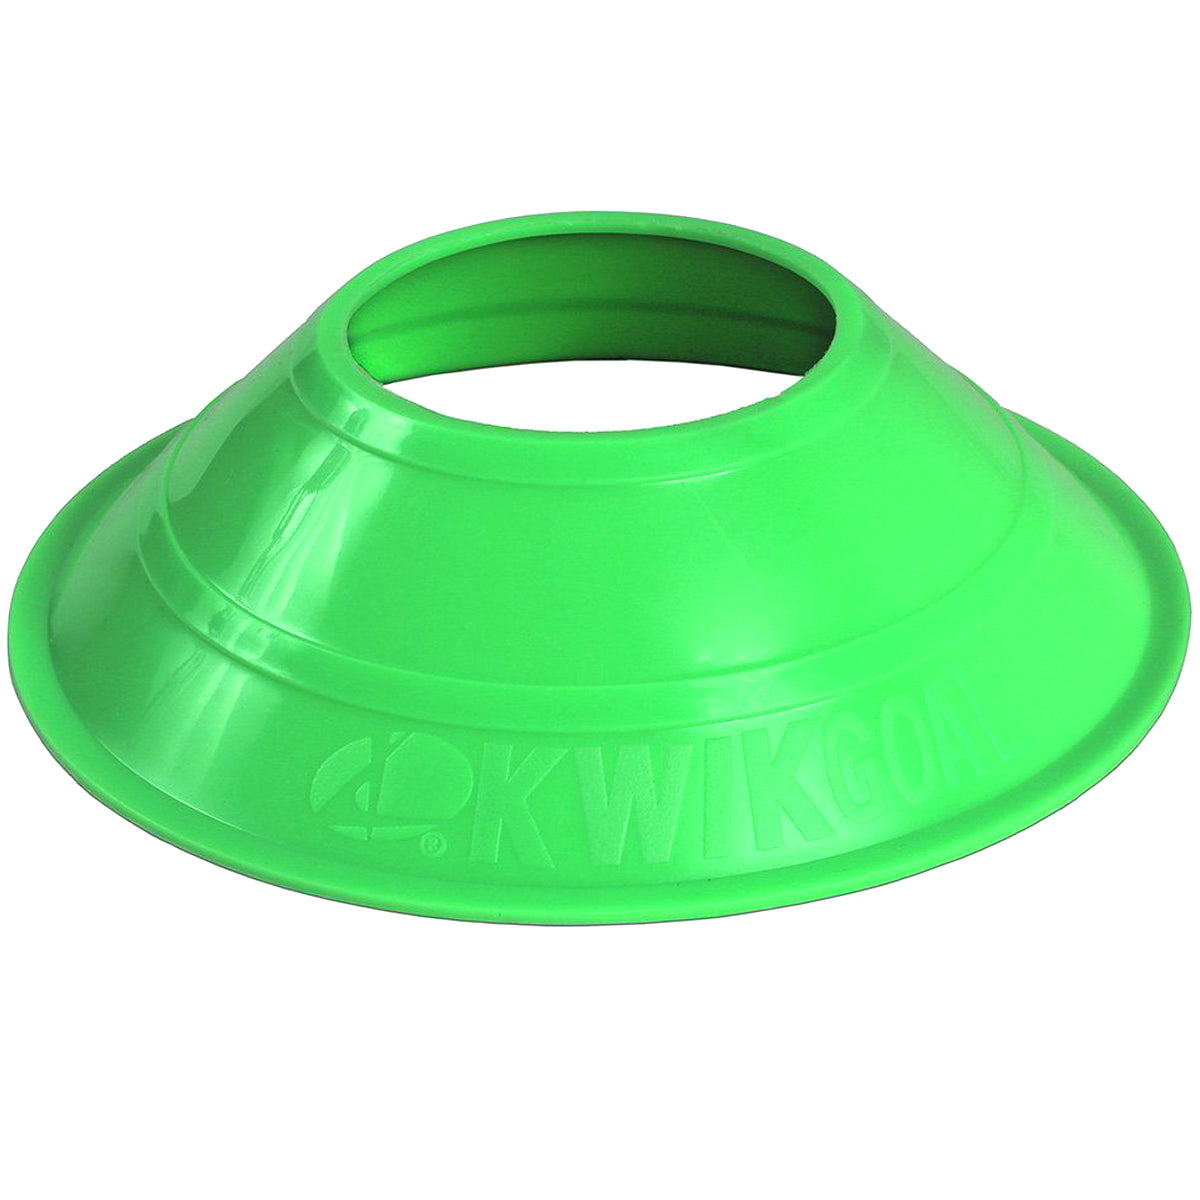 Kwikgoal Mini Disc Cones Soccer Coaching Equipment | 6A14 Field equipment Kwikgoal High-Vis Green 